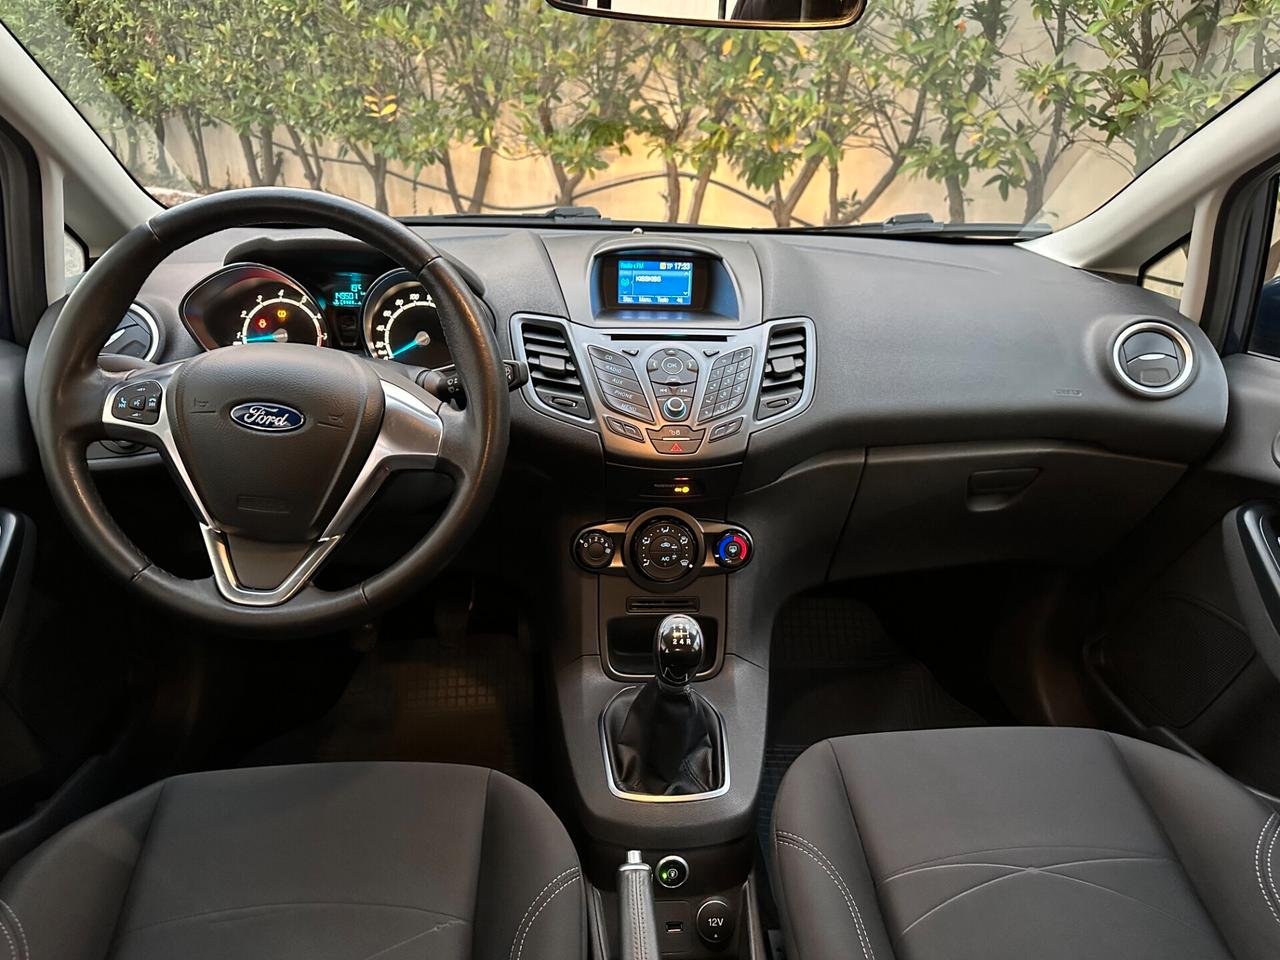 Ford Fiesta 1.4 5 porte Bz.- GPL